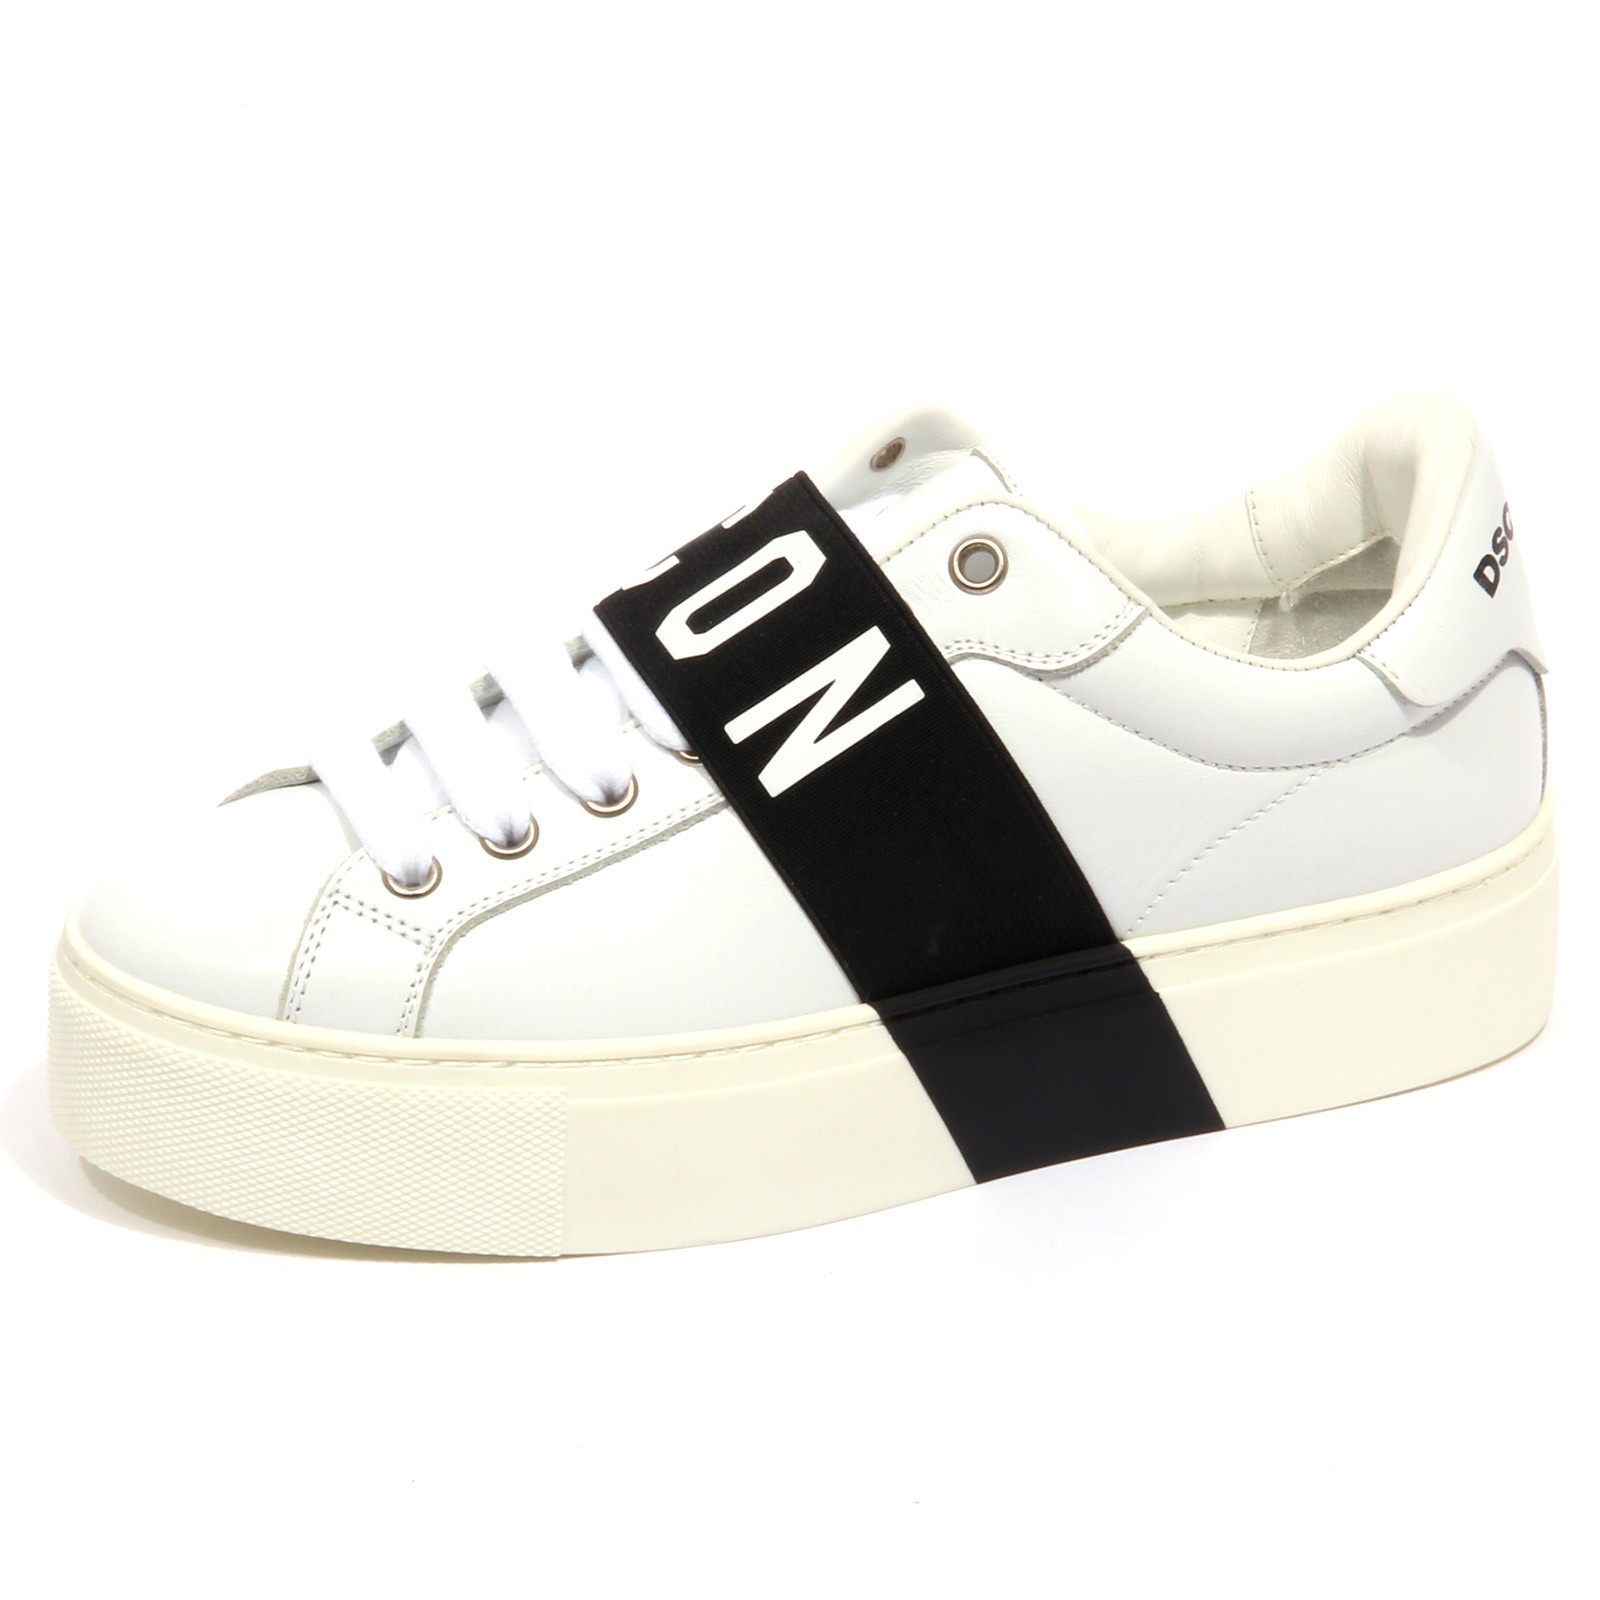 디스퀘어드2 sneaker woman off white / black DSQUARED2 ICON shoes